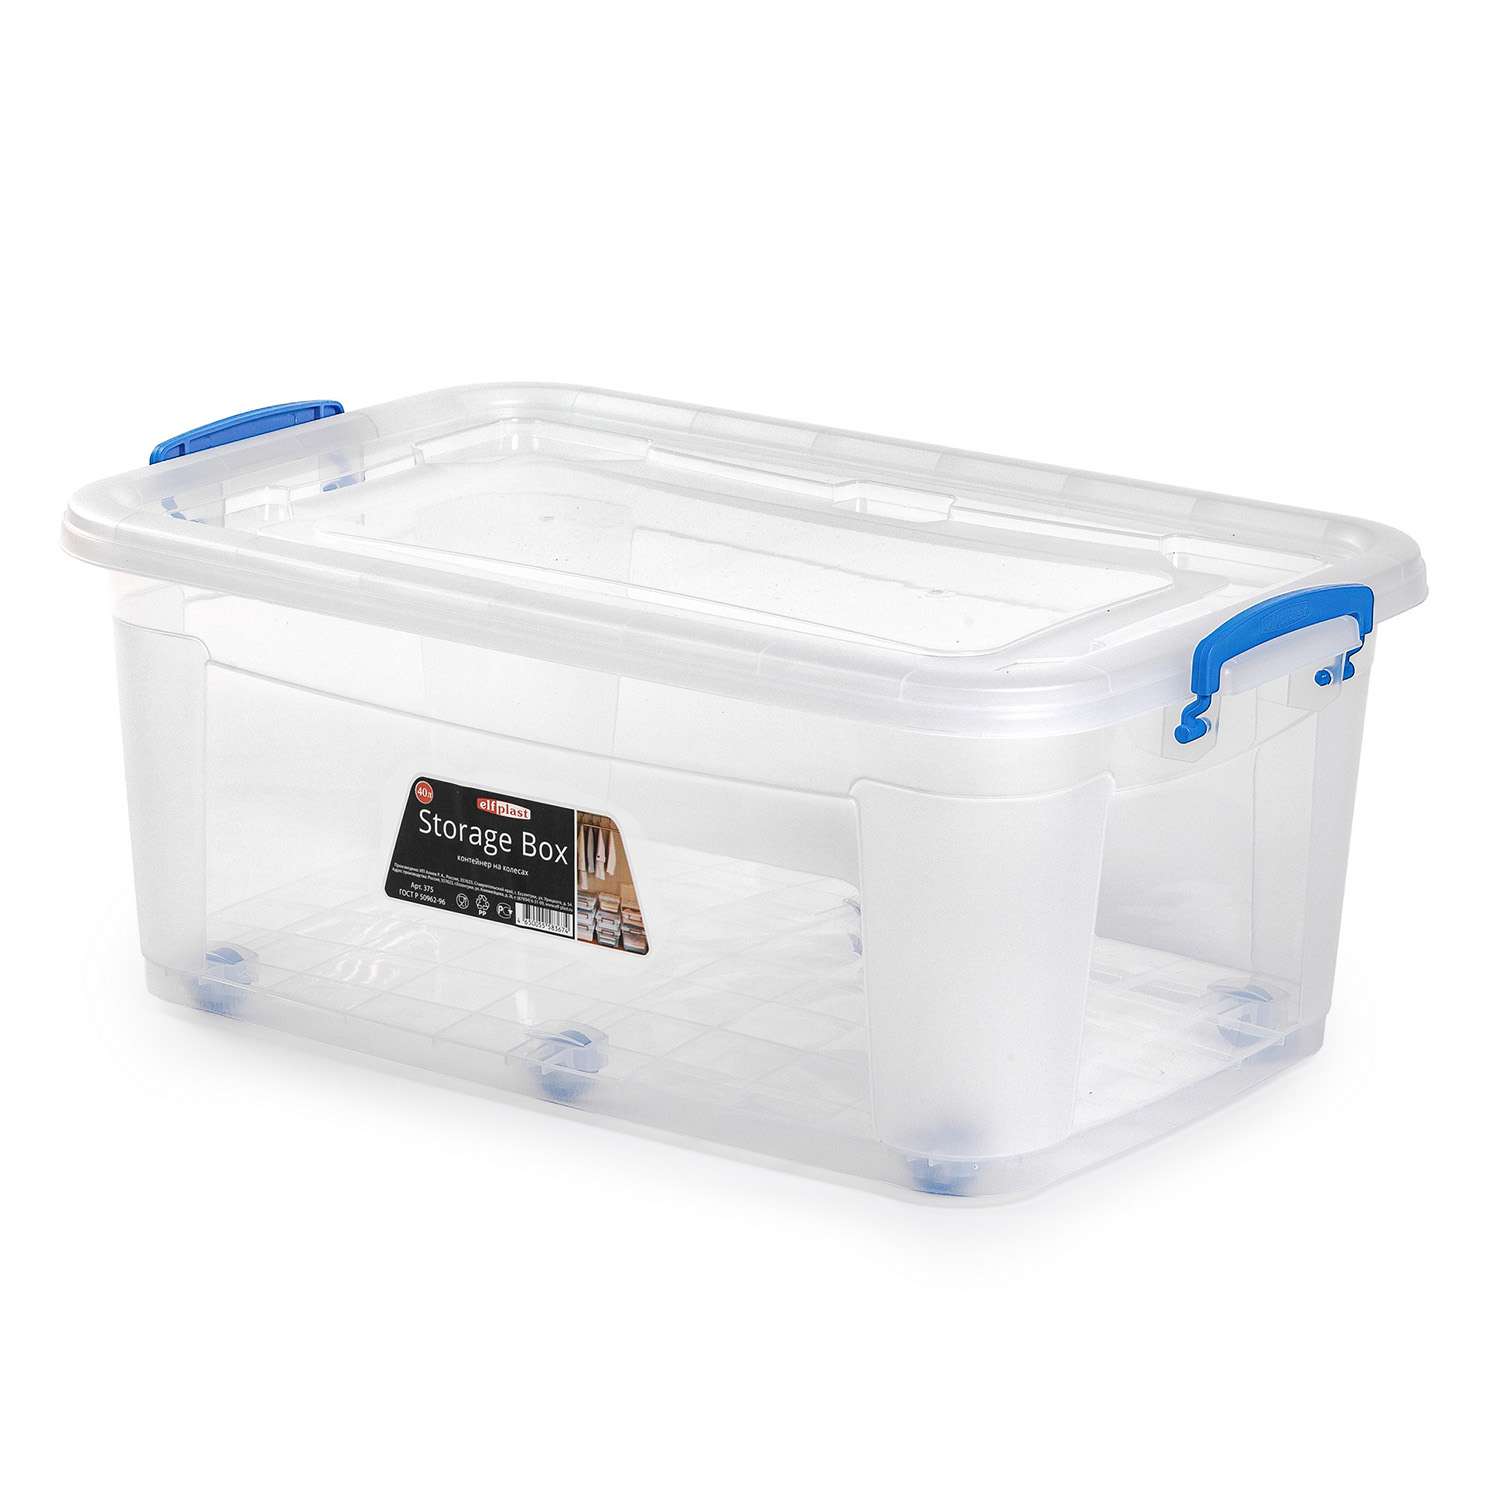 Контейнер elfplast для хранения Storage Box на колесах прозрачный 40 л 64х41.5х25 см - фото 4